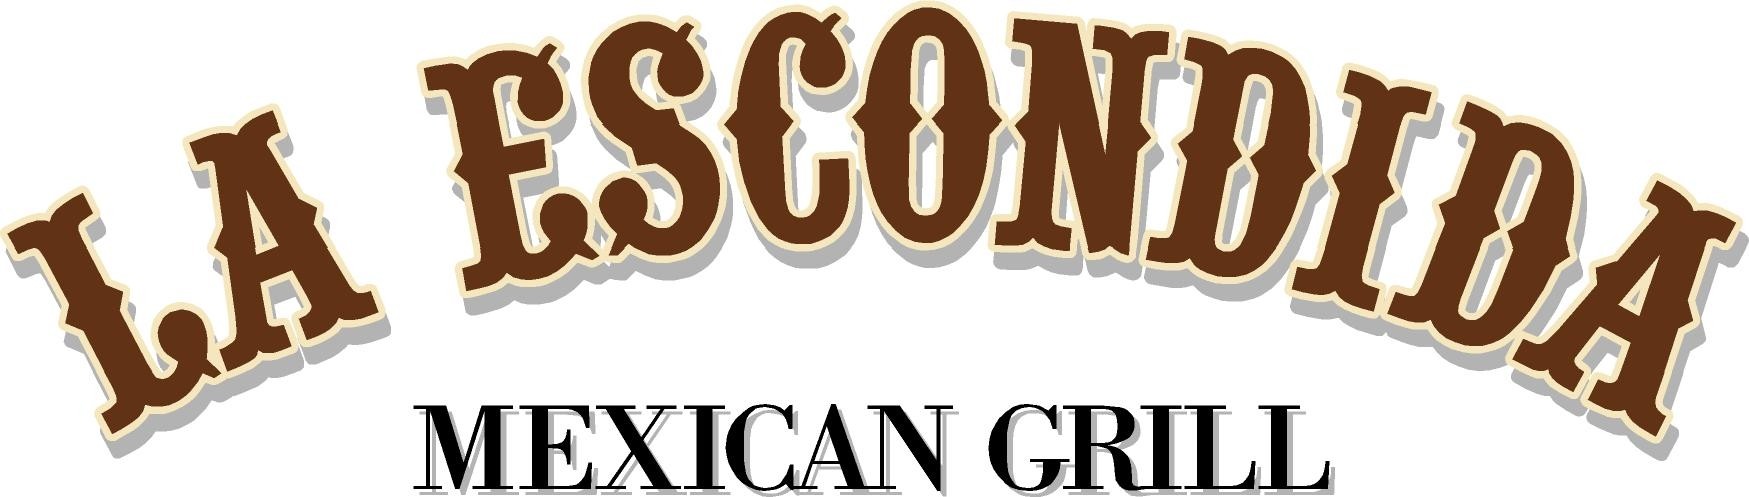 La Escondida Mexican Grill Missouri City